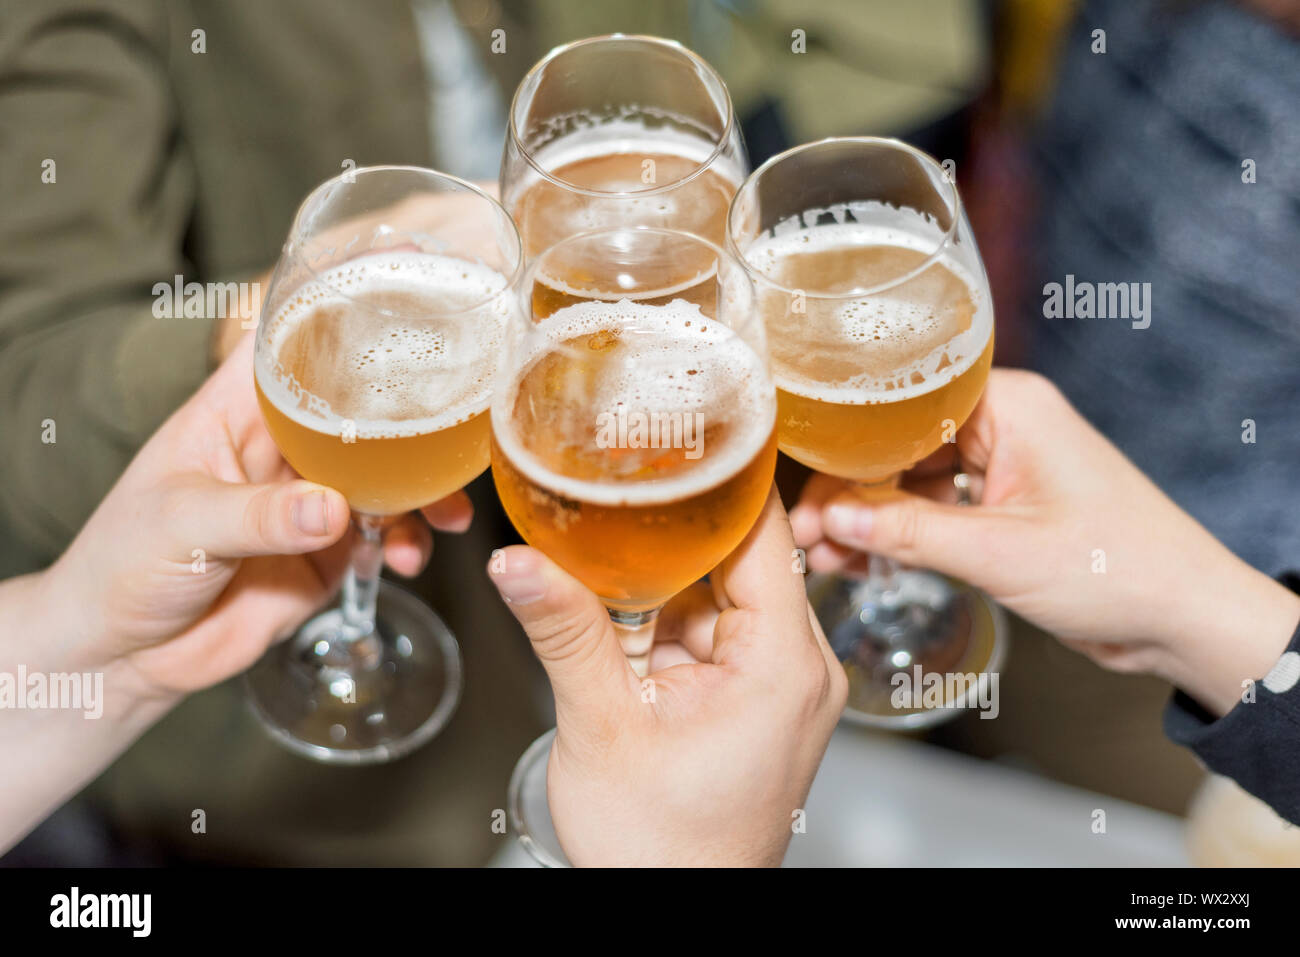 Grupo de Amigos bebiendo cerveza, tostado, en pub Foto de stock